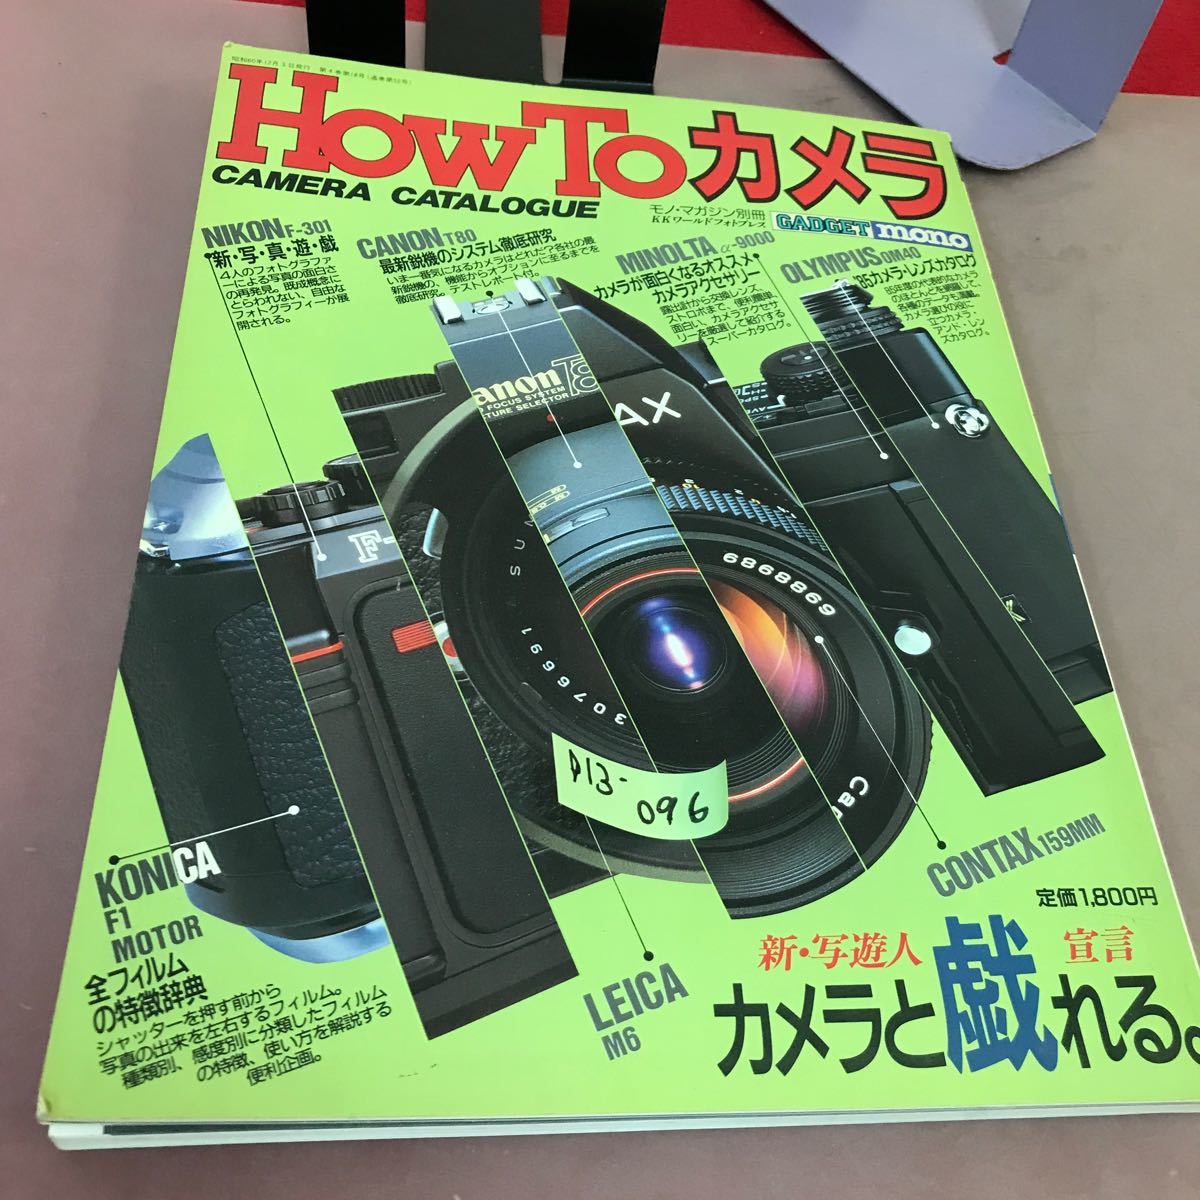 D13-096 Как камера камеры, отдельный объем журнала, новая / шейдо объявление, Стол с камерой